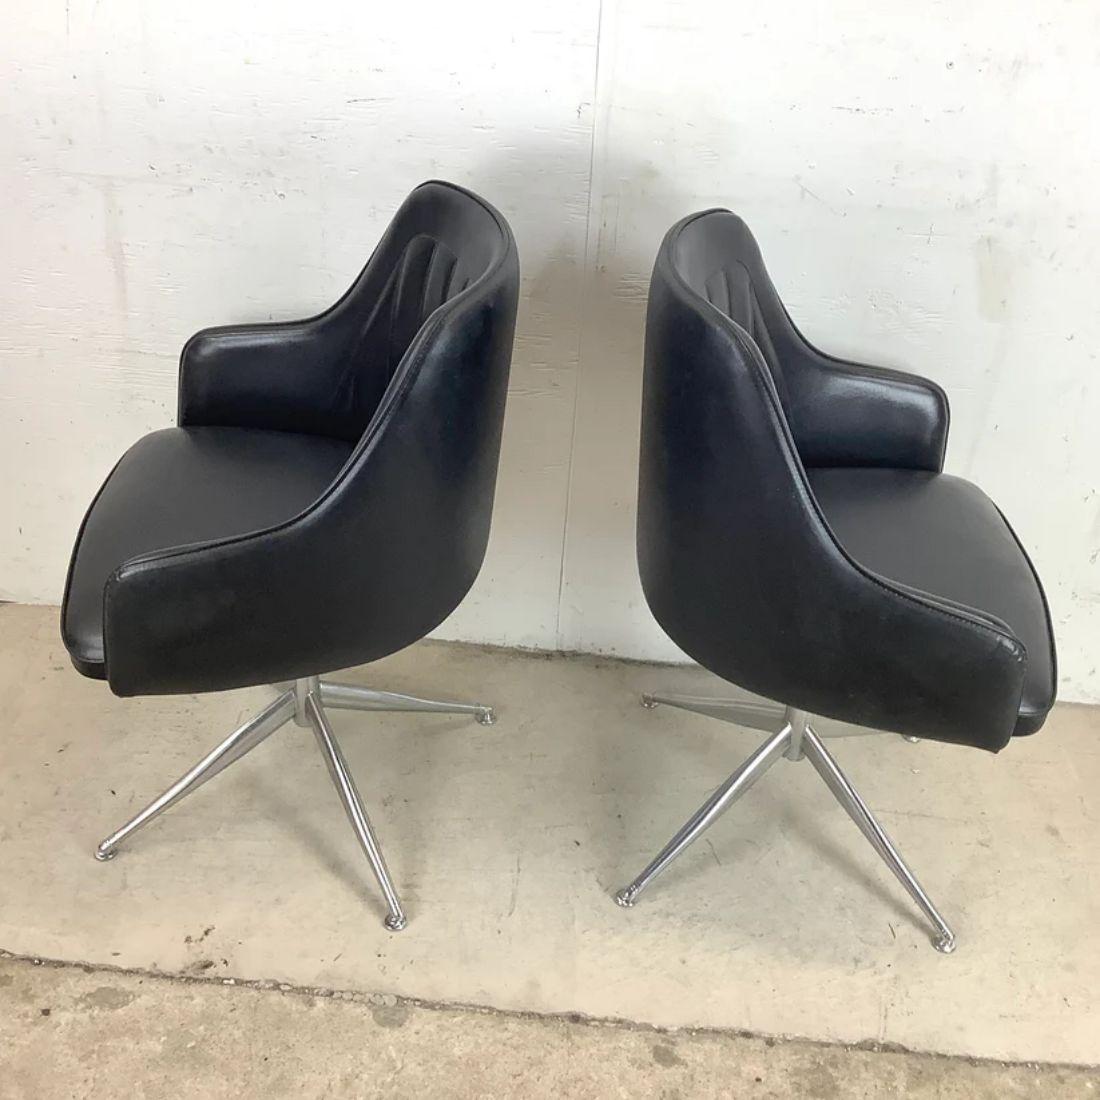 Cette élégante paire de chaises pivotantes du milieu du siècle présente un design atomique unique de style Baumritter. Les dossiers arrondis s'adaptent confortablement au dos tandis que les bases frappantes en acier à quatre points présentent des